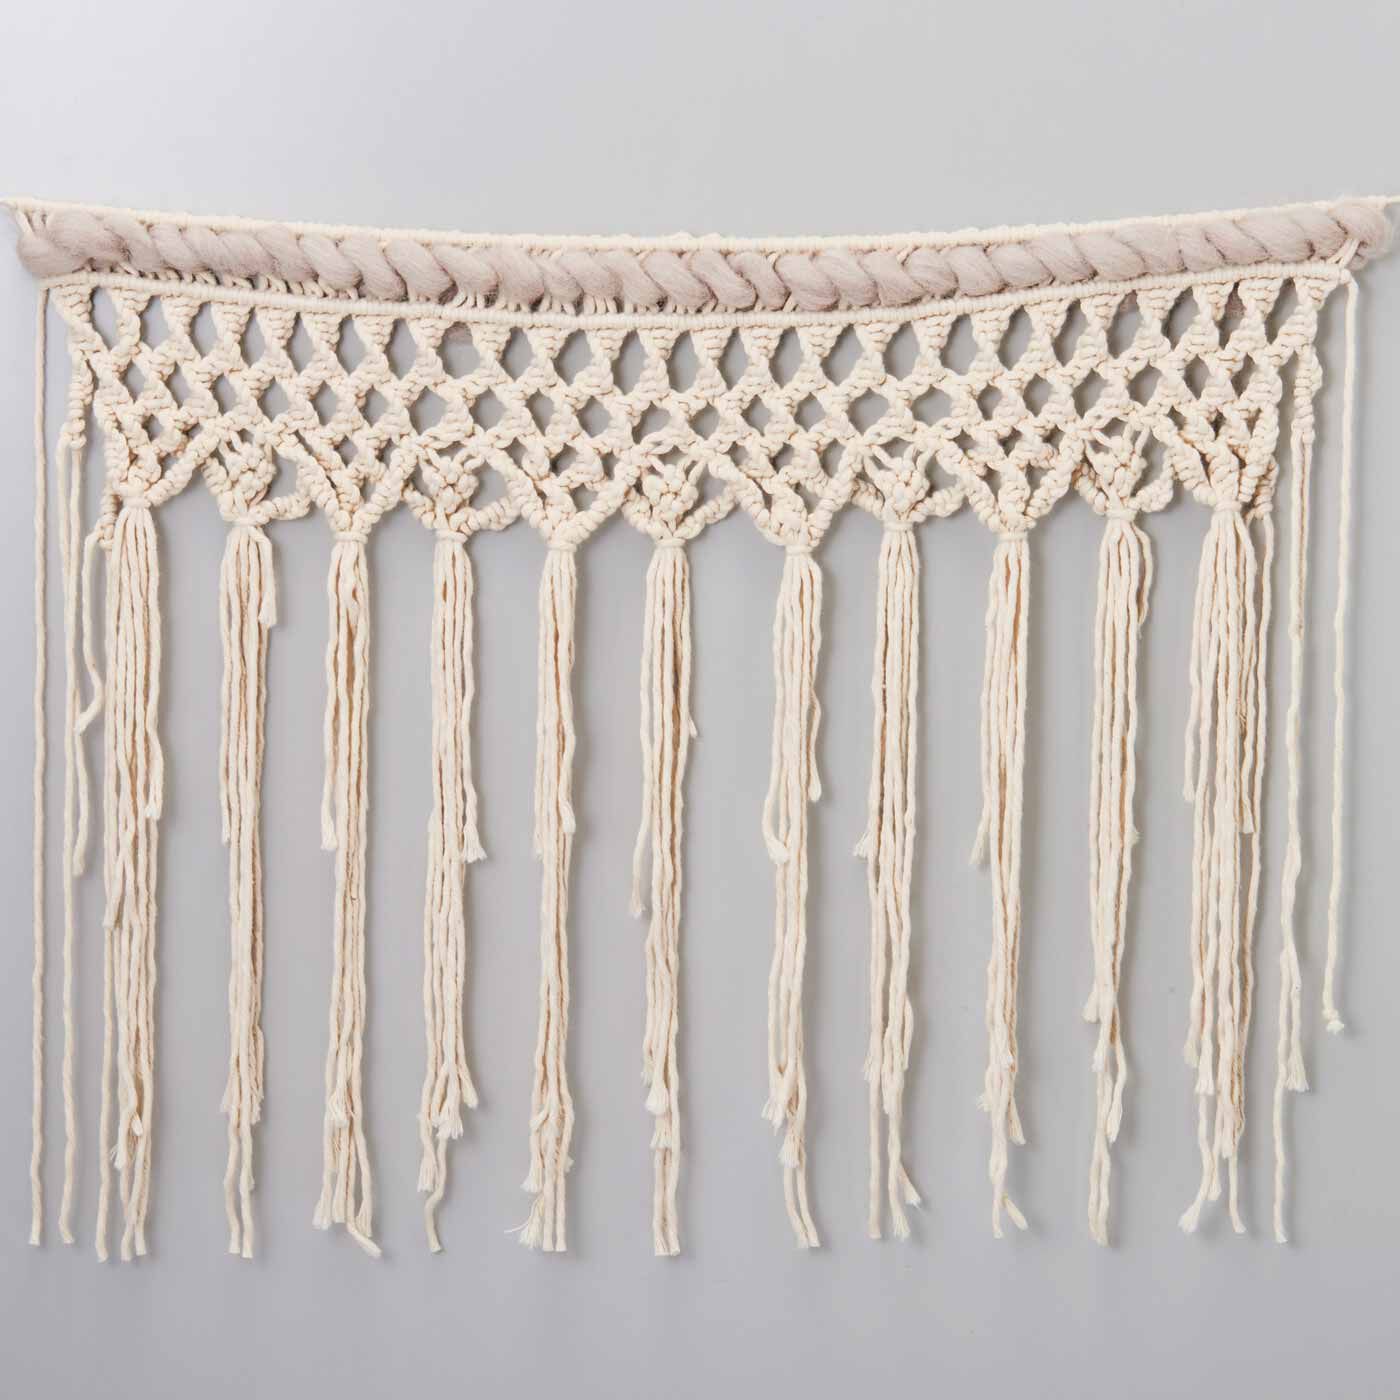 SeeMONO|やわらかい甘撚（よ）り糸で作る マクラメガーランドキットの会|ねじり結びとスマック織り